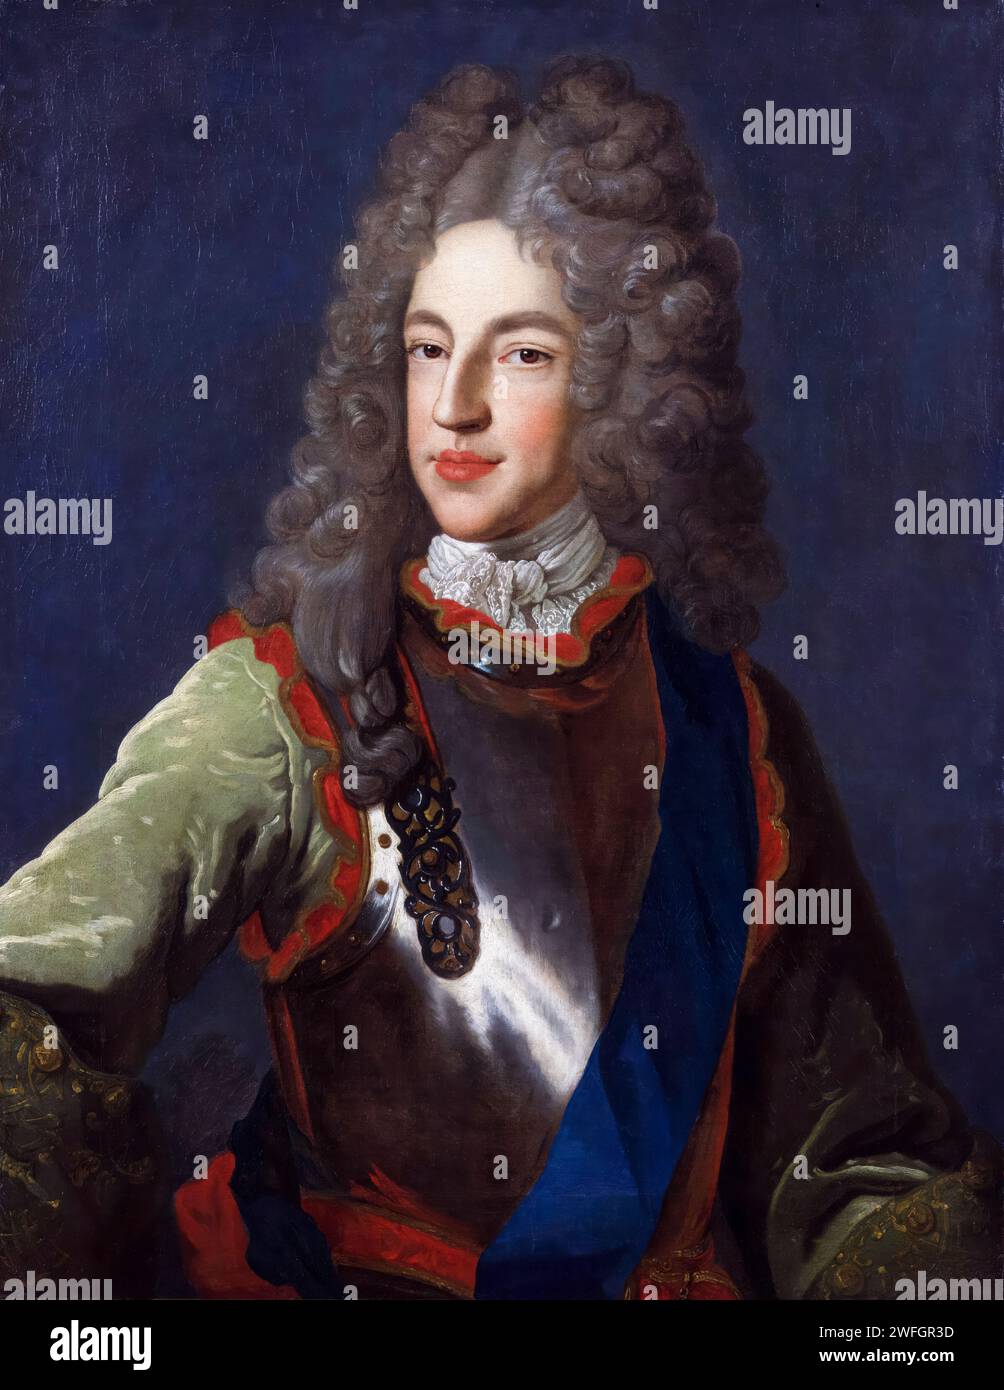 Il principe James Francis Edward Stuart (1688-1766), soprannominato "il vecchio pretendente", ritratto dipinto ad olio su tela dall'officina di Alexis Simon Belle, circa 1712 Foto Stock